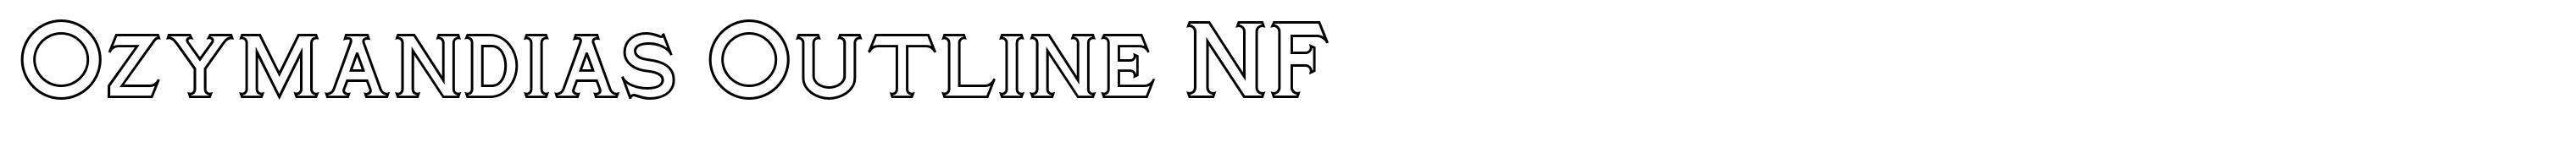 Ozymandias Outline NF